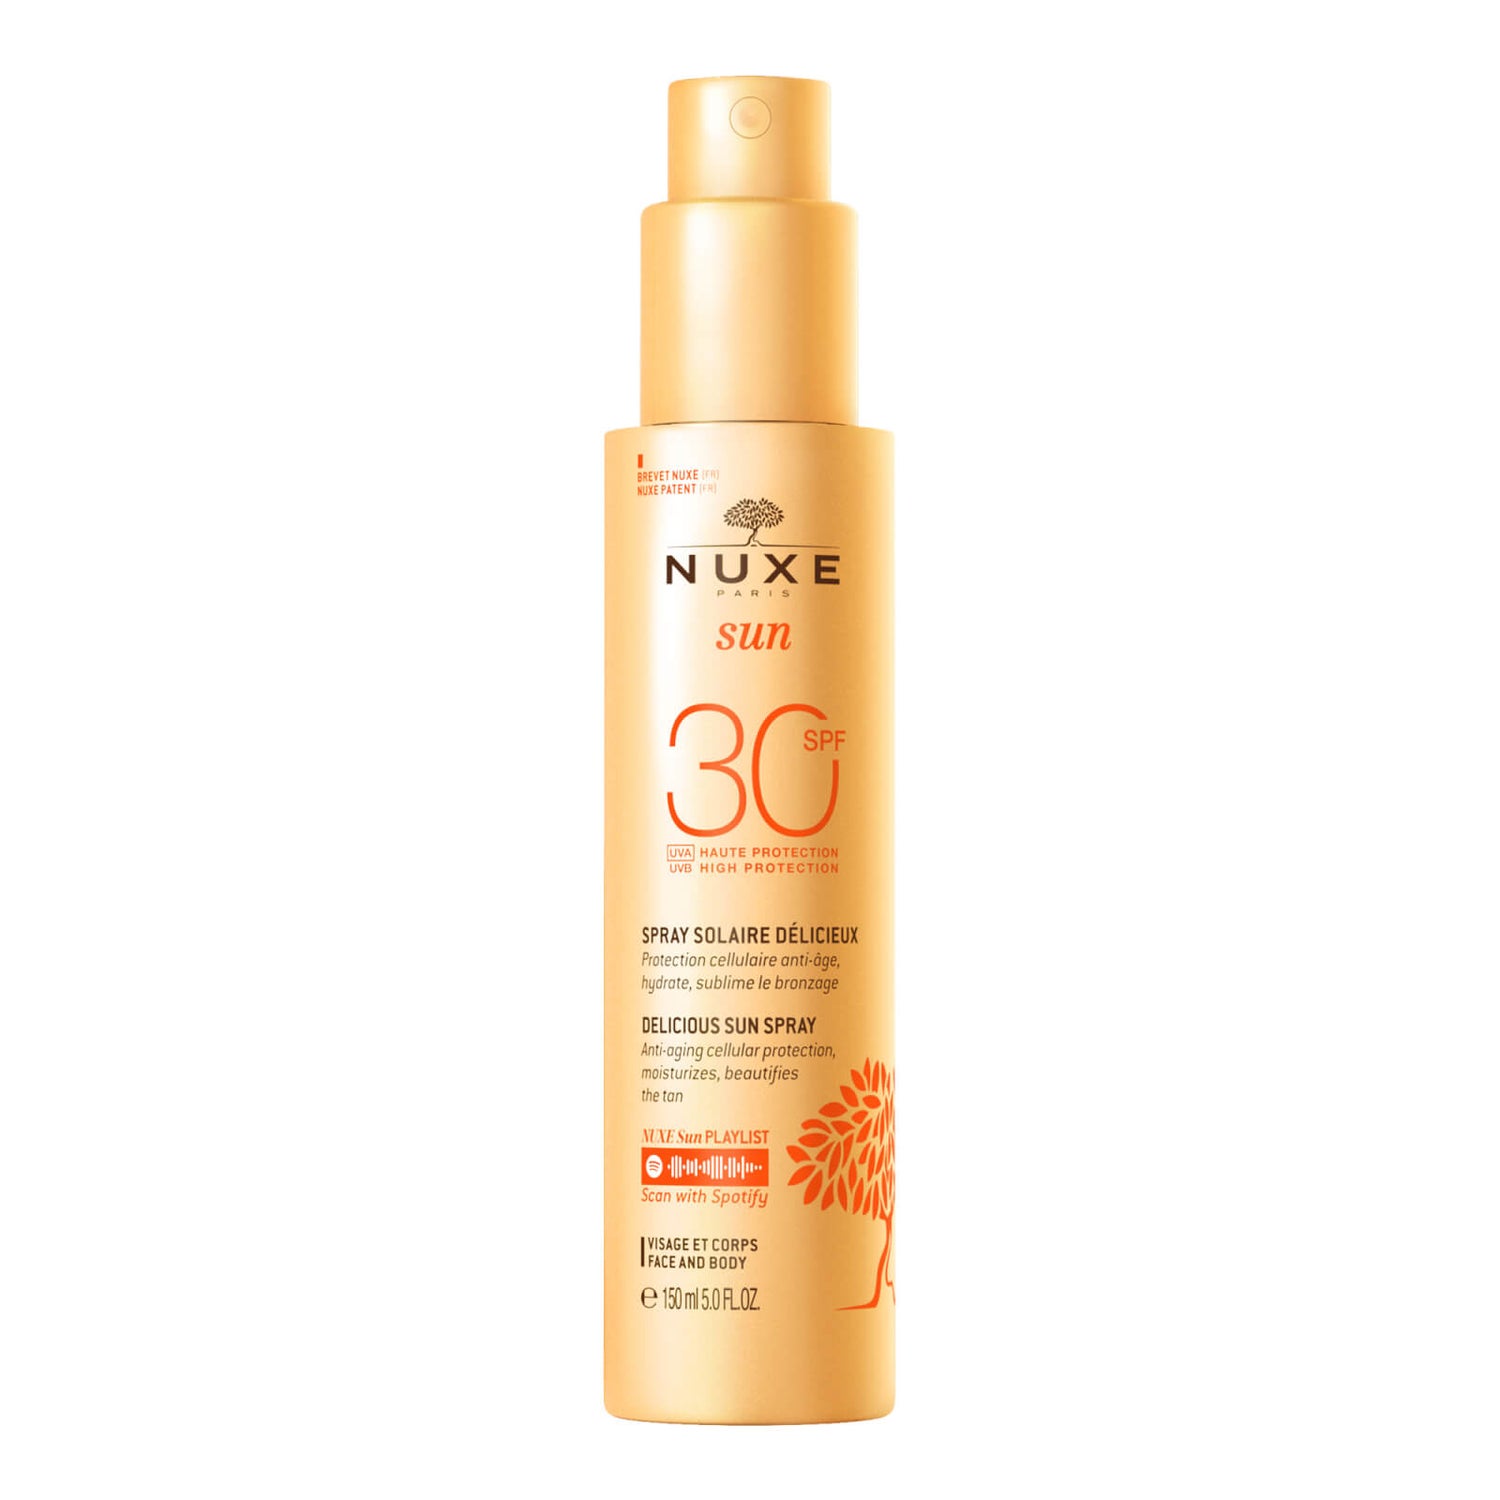 NUXE Delicious Sun Spray High Protection SPF30 face and body, NUXE Sun 150ml